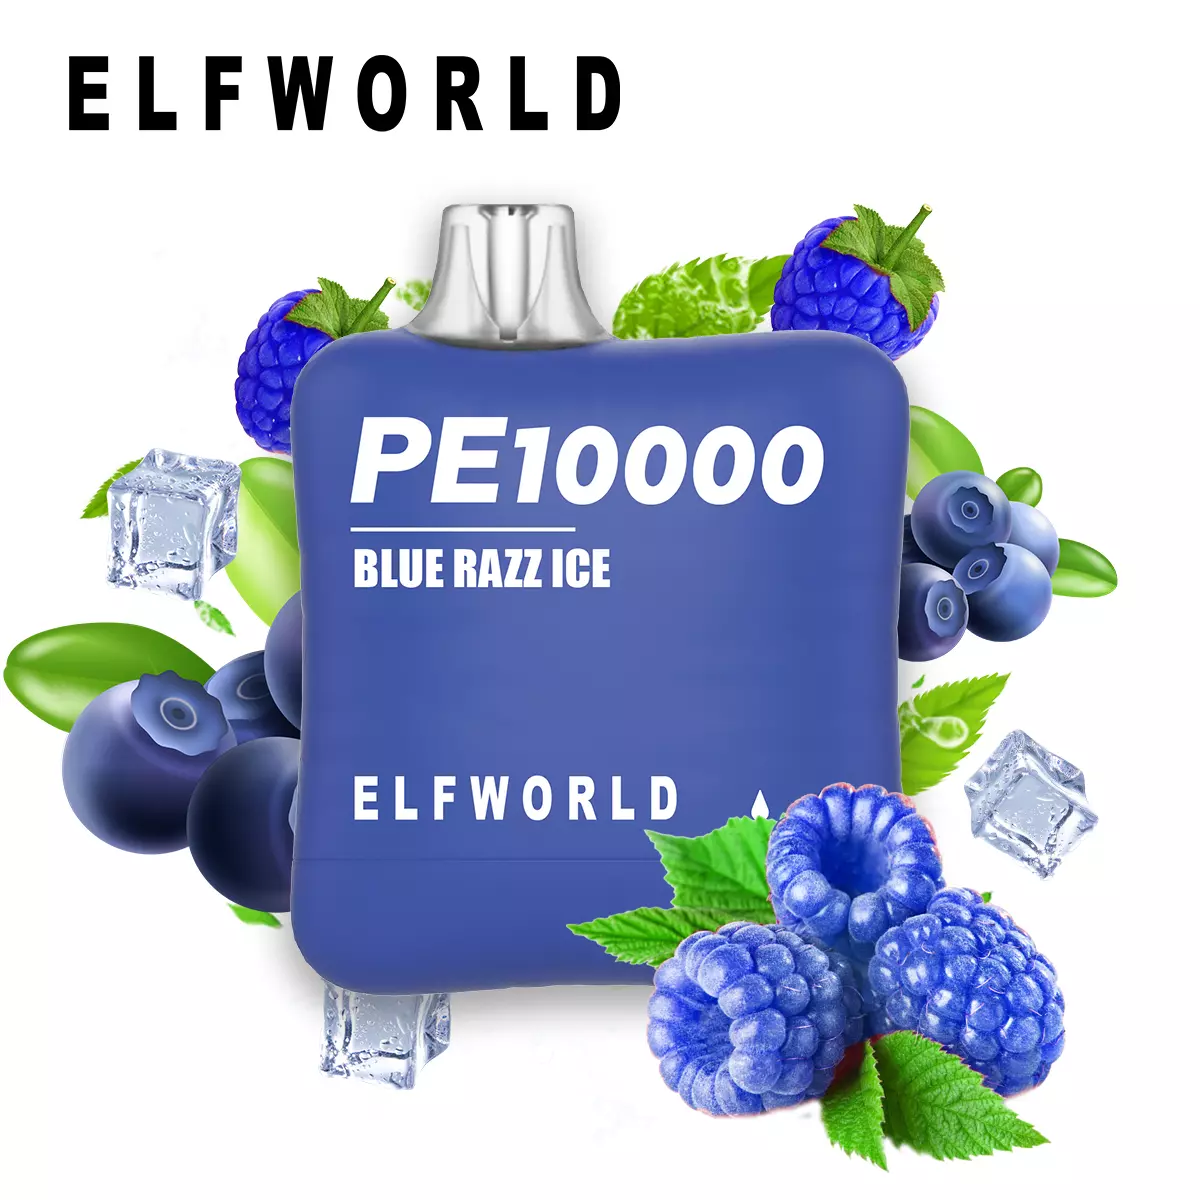 Elf World PE 10000 Blue Razz Ice